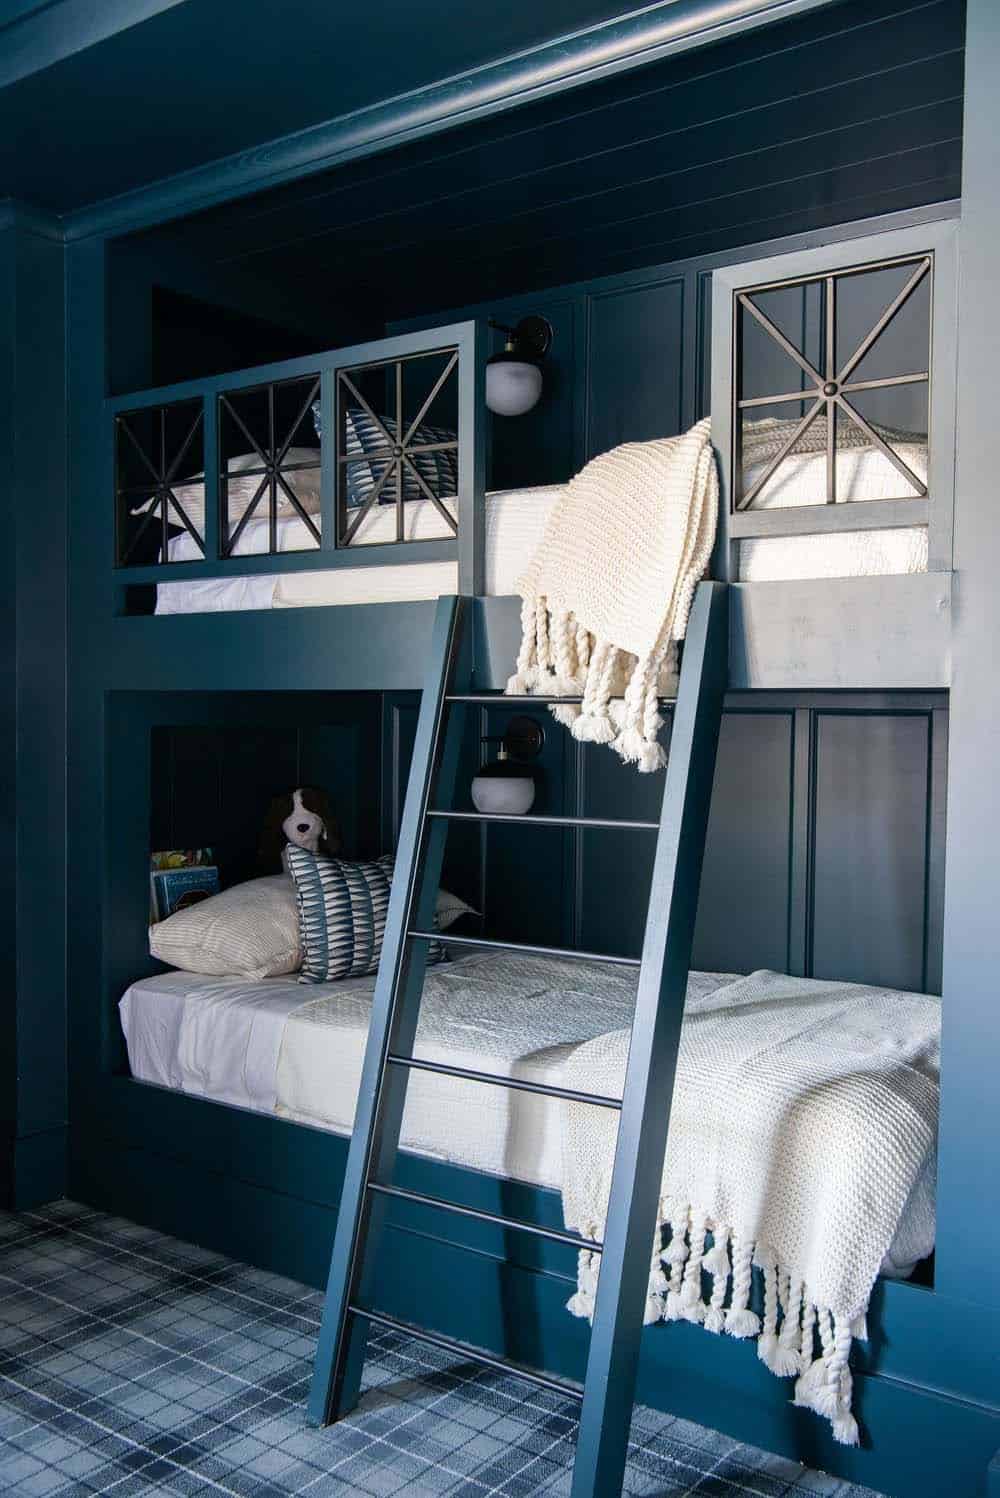 contemporary bunk bedroom